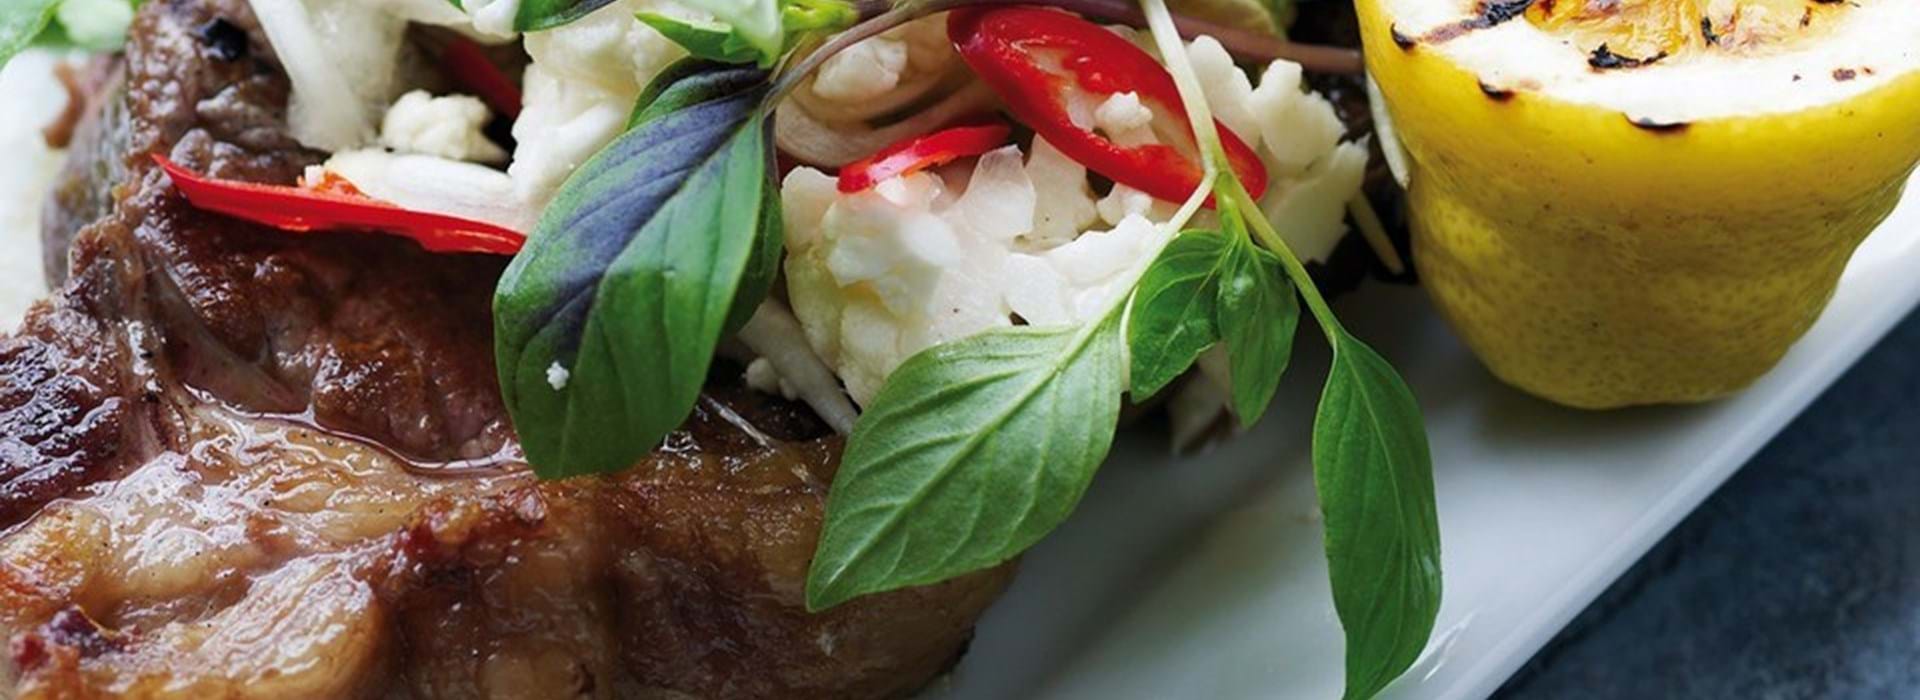 Grillstegte højrebskoteletter thaisalat - Se opskrift